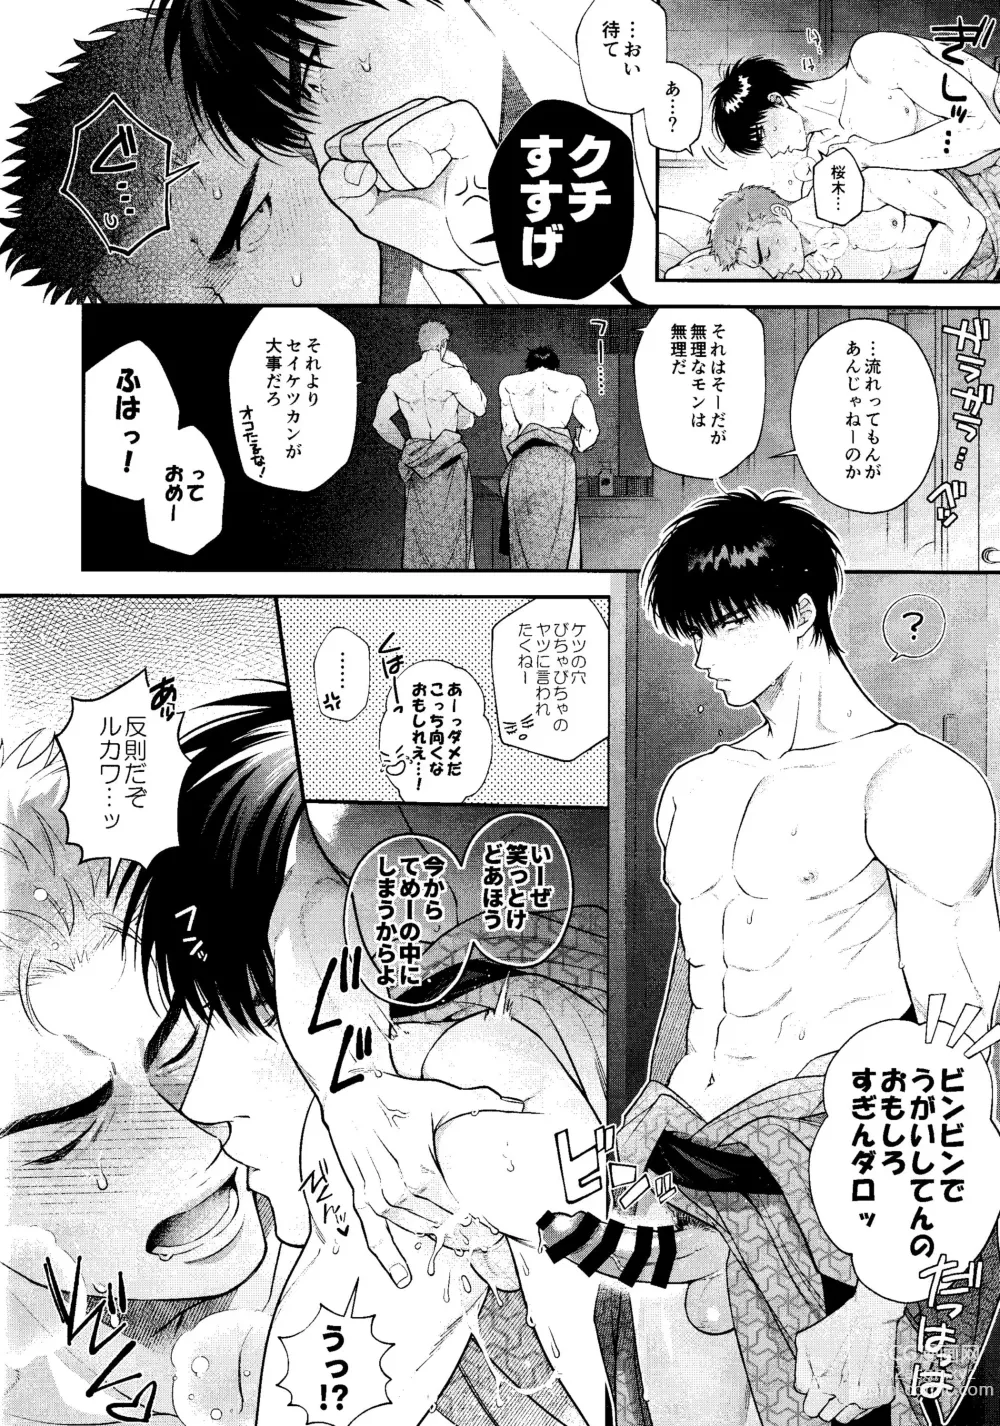 Page 10 of doujinshi Subeteha Kawaii teme-no Sei!